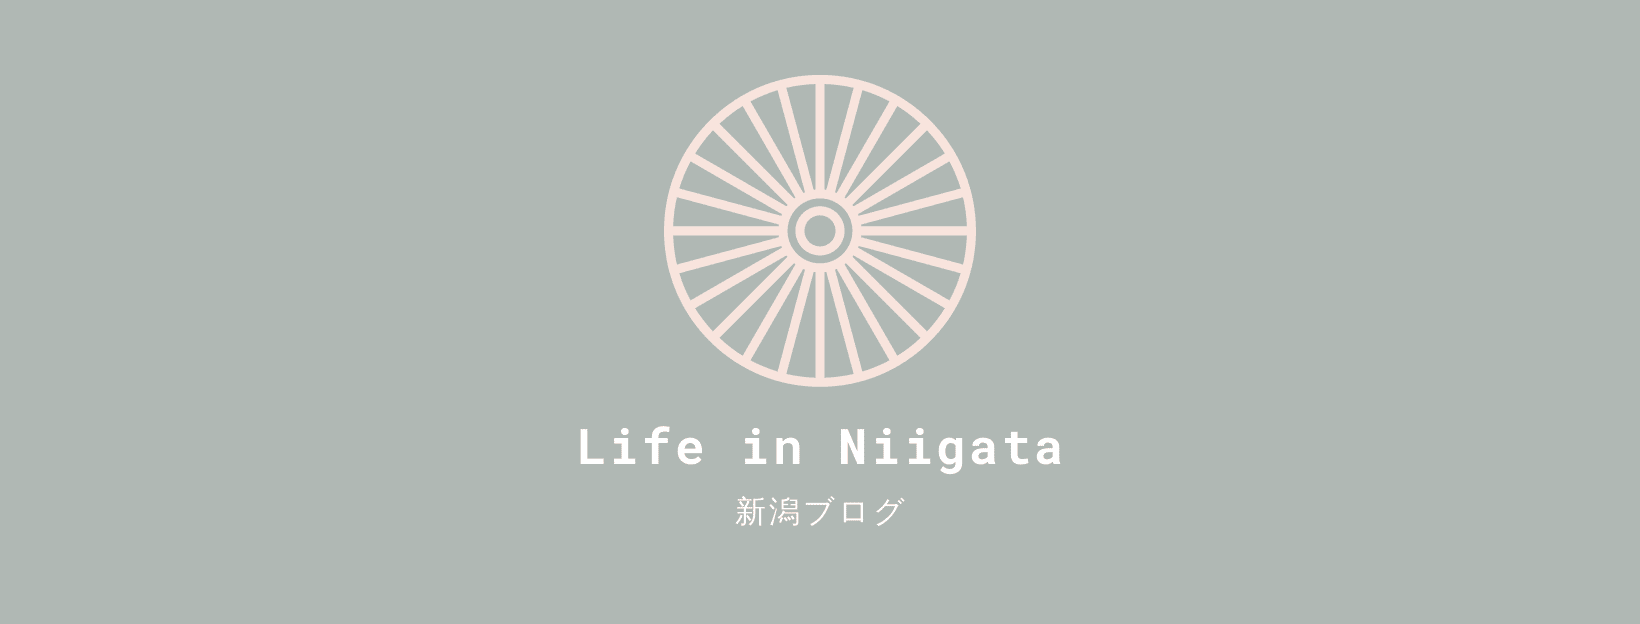 Life in Niigata